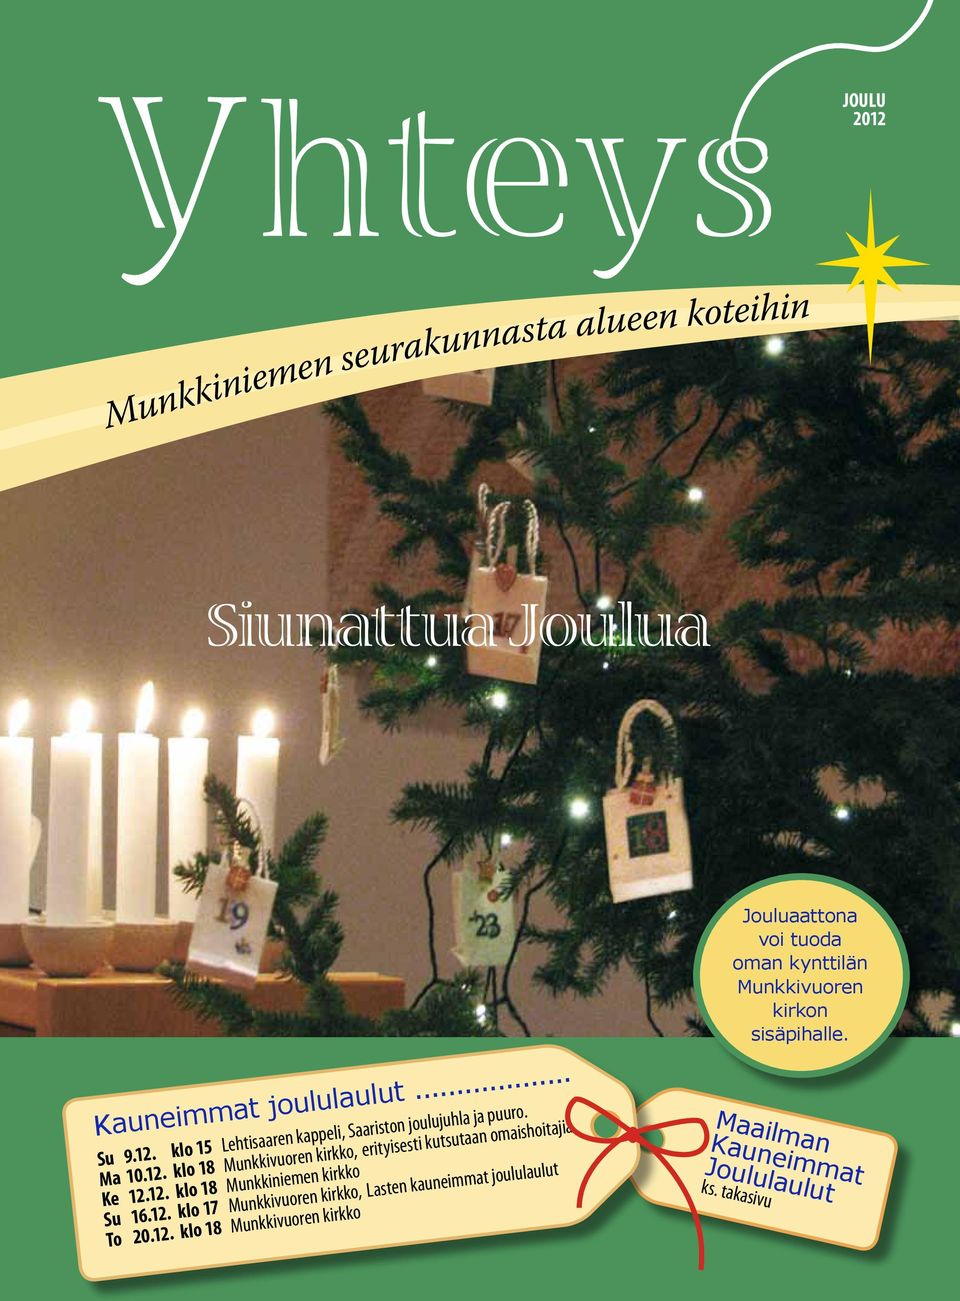 12. klo 18 Su 16.12. klo 17, Lasten kauneimmat joululaulut To 20.12. klo 18 Jouluaattona voi tuoda oman kynttilän Munkkivuoren kirkon sisäpihalle.